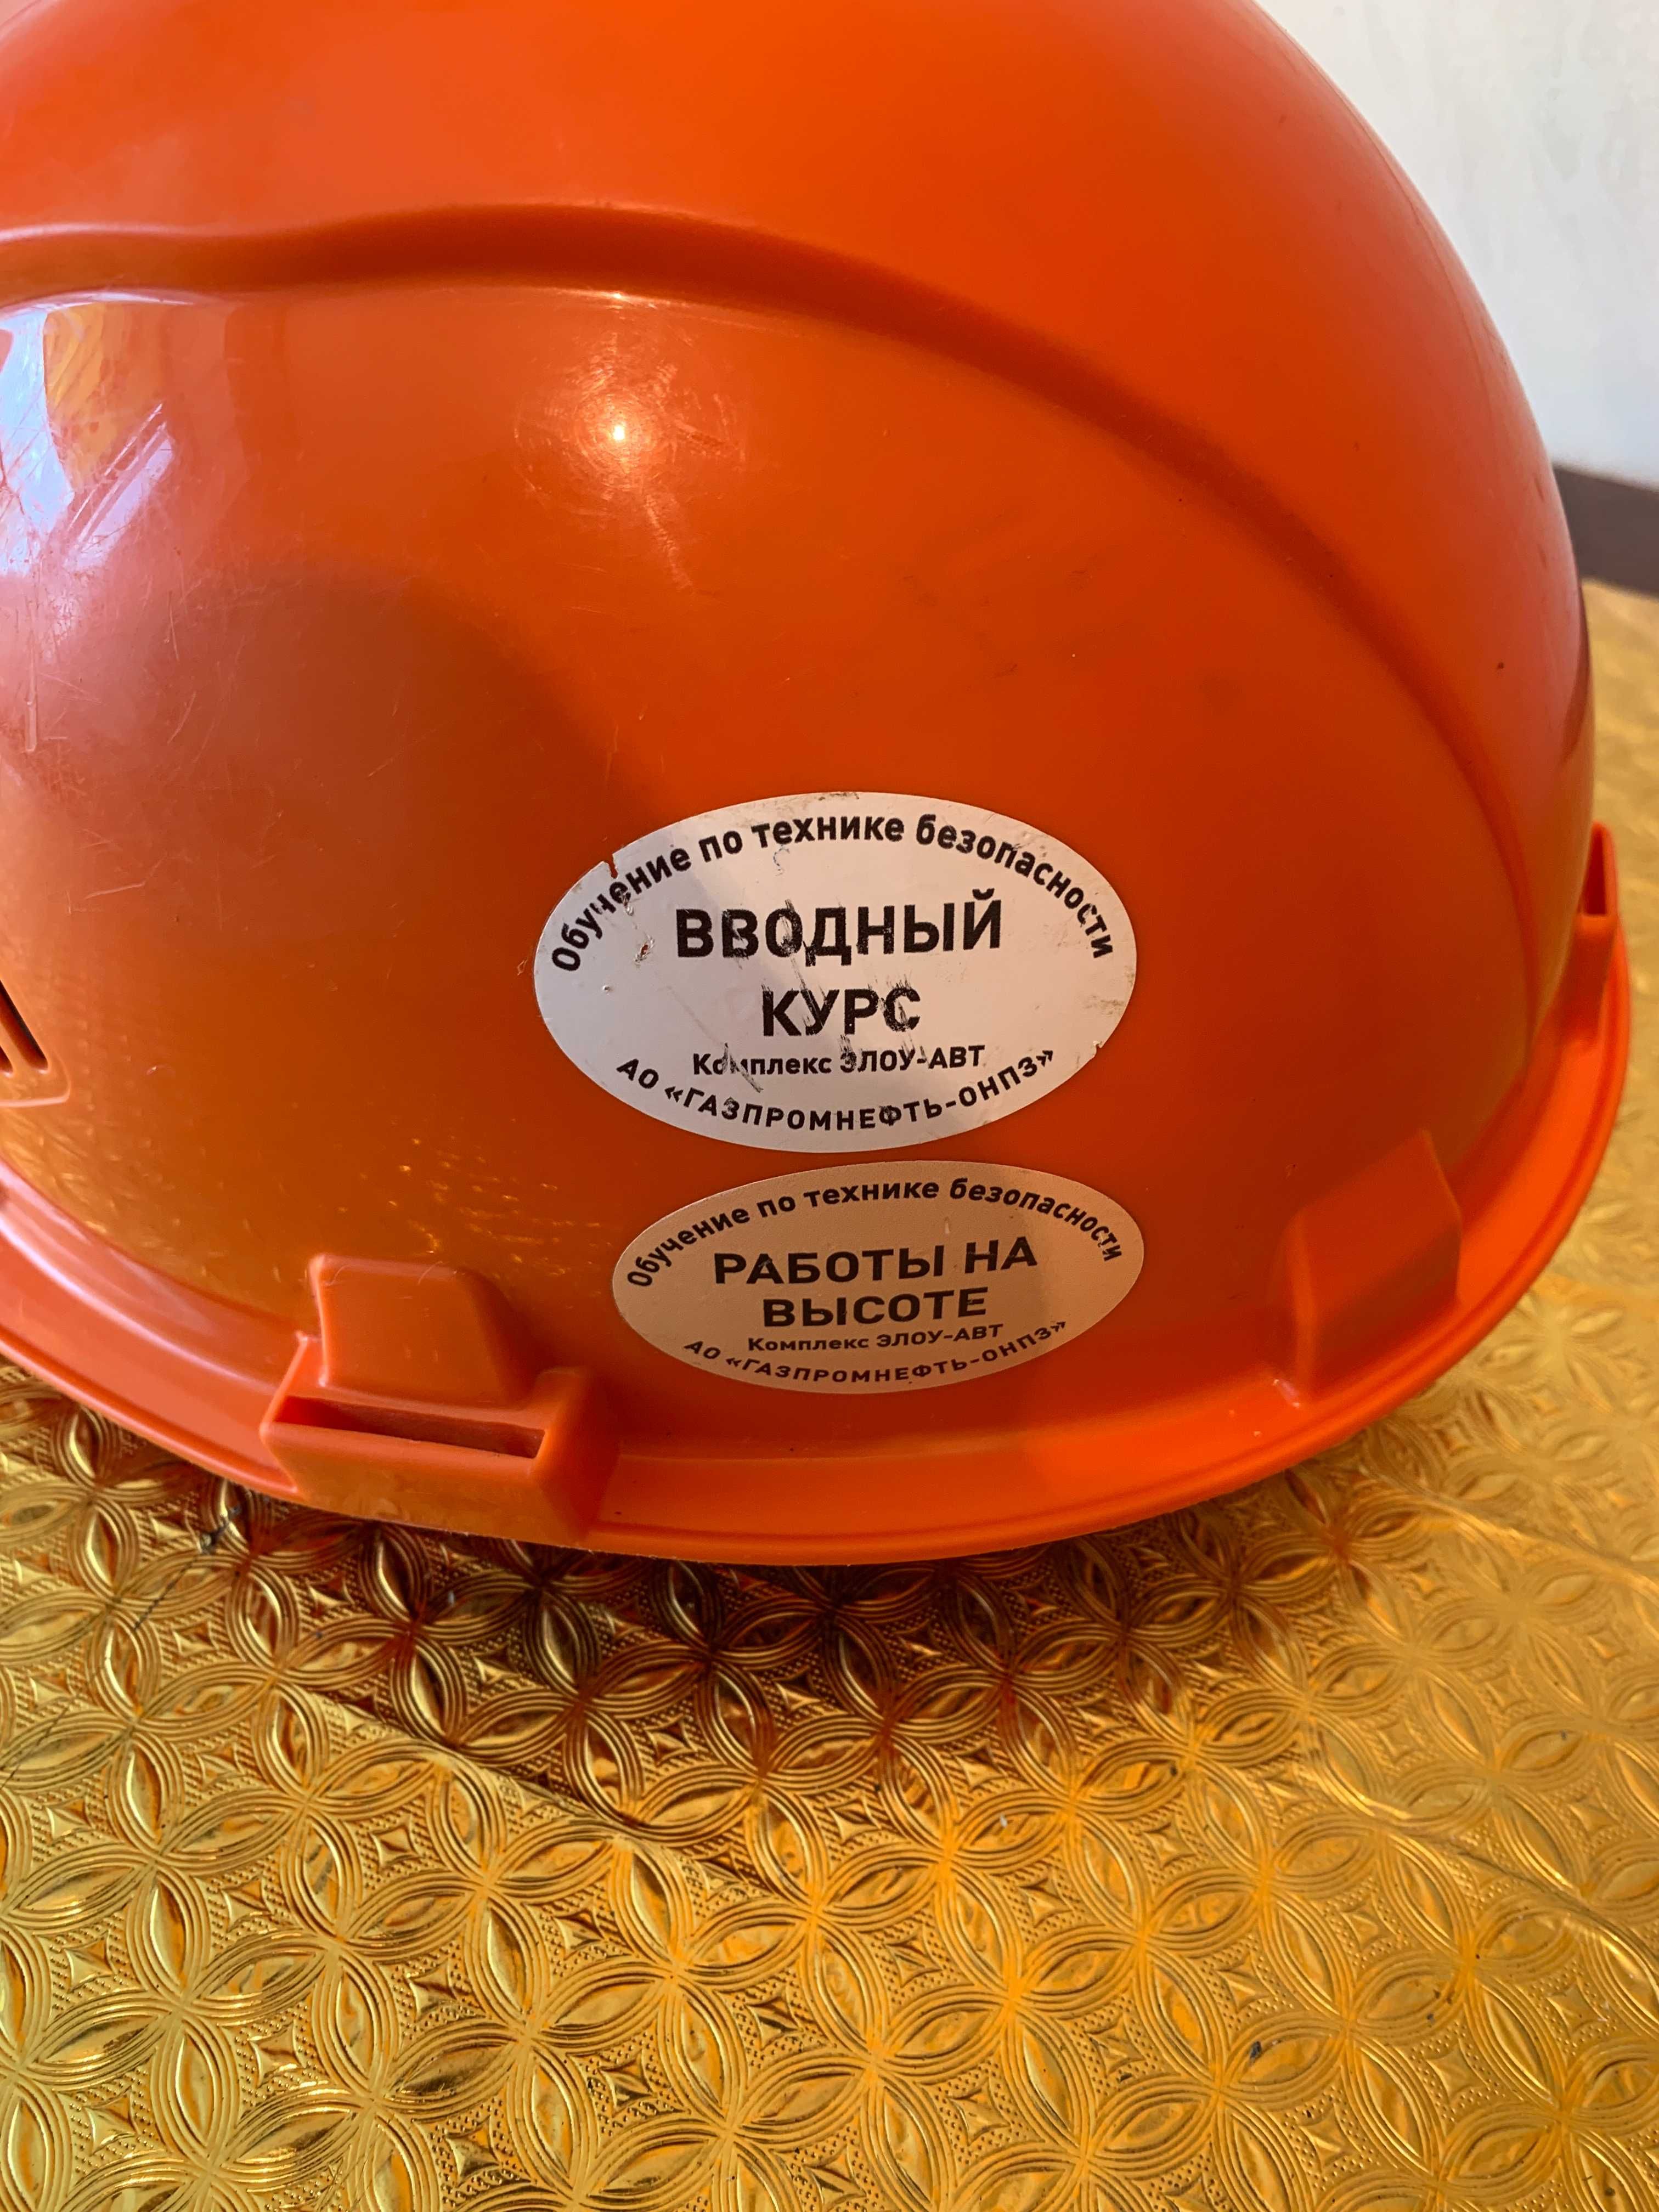 Продам каску защитную СОМЗ-55 оранжевого цвета (сделано в России)